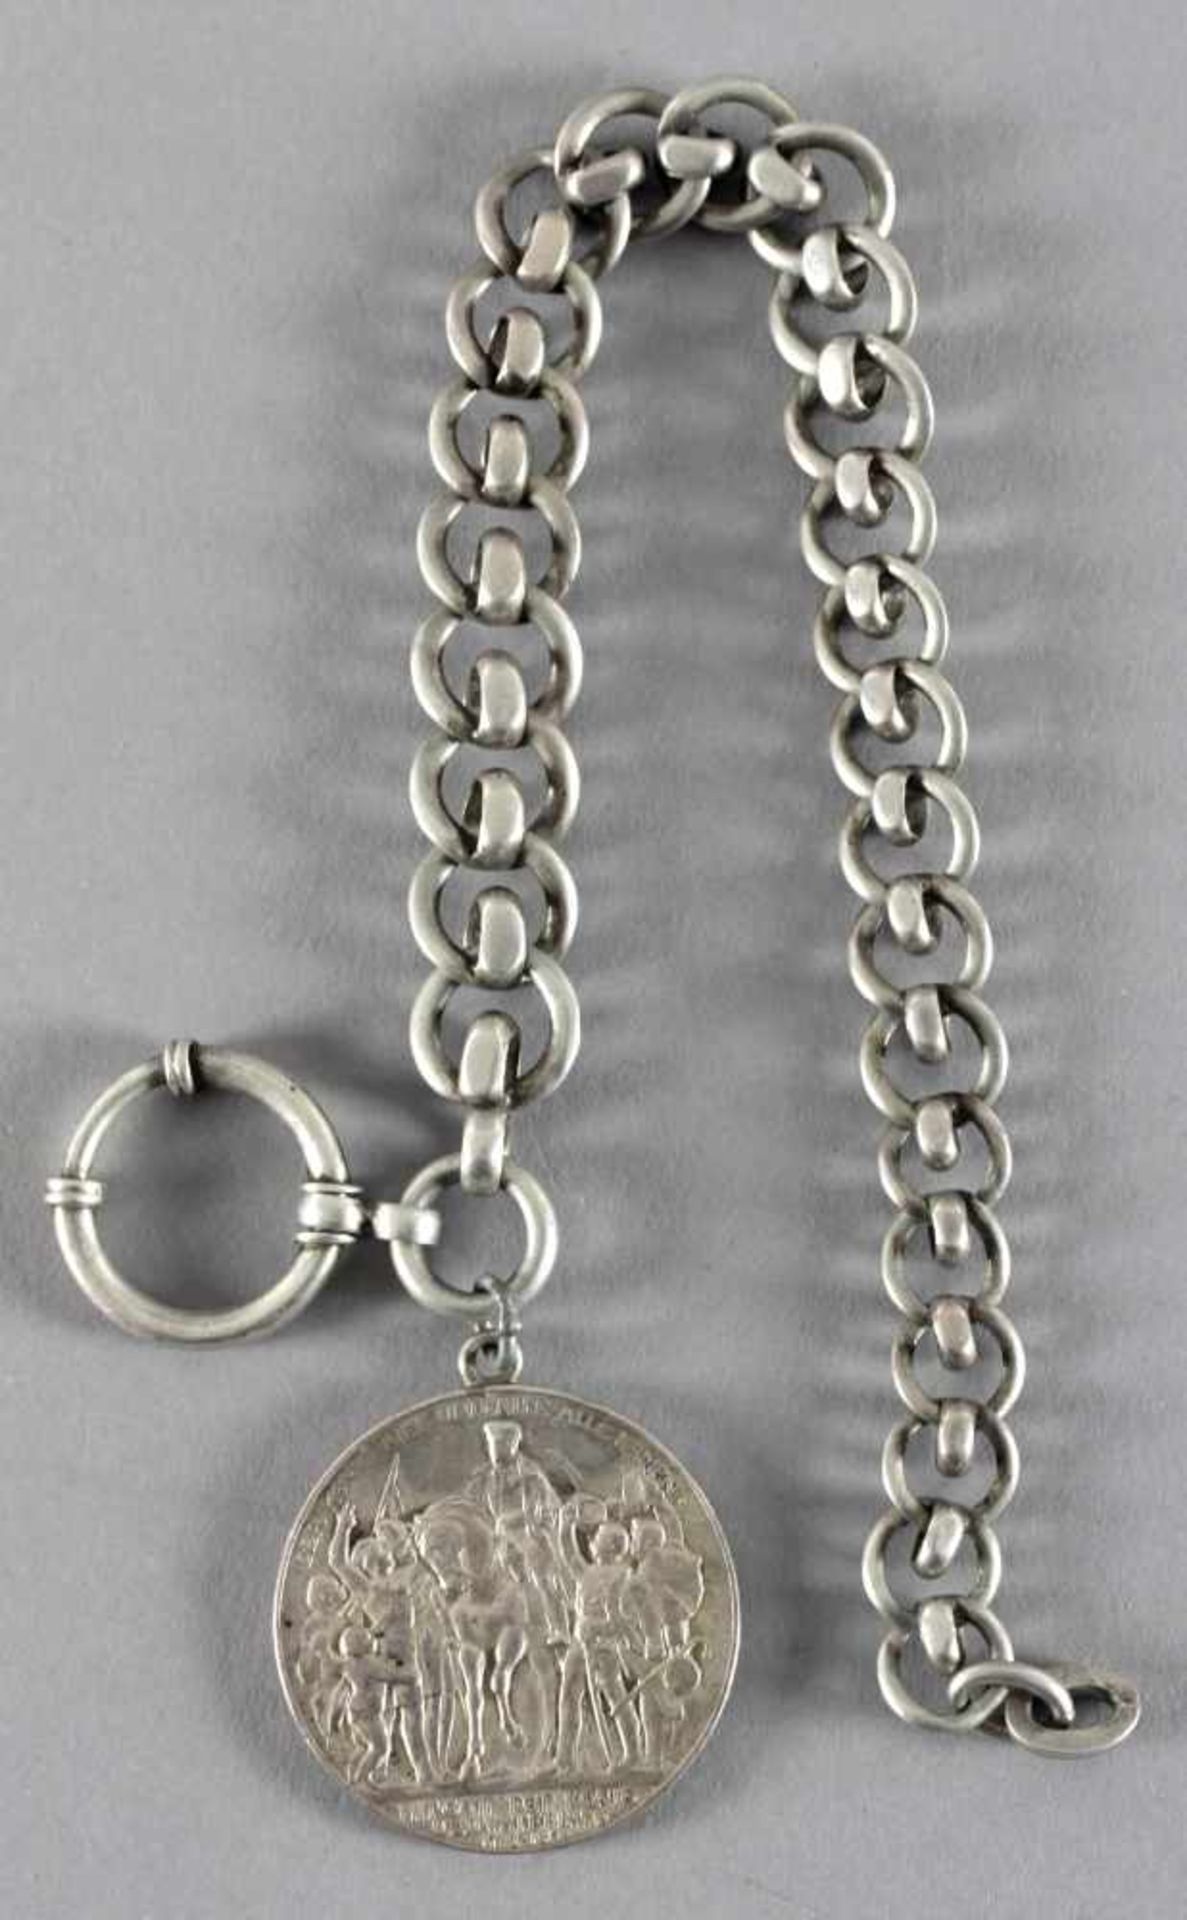 Uhrenkette Silber, deutsches Reich, 1913Rundpanzerkette mit 3-Mark-Silber-Münze und Prägung zur